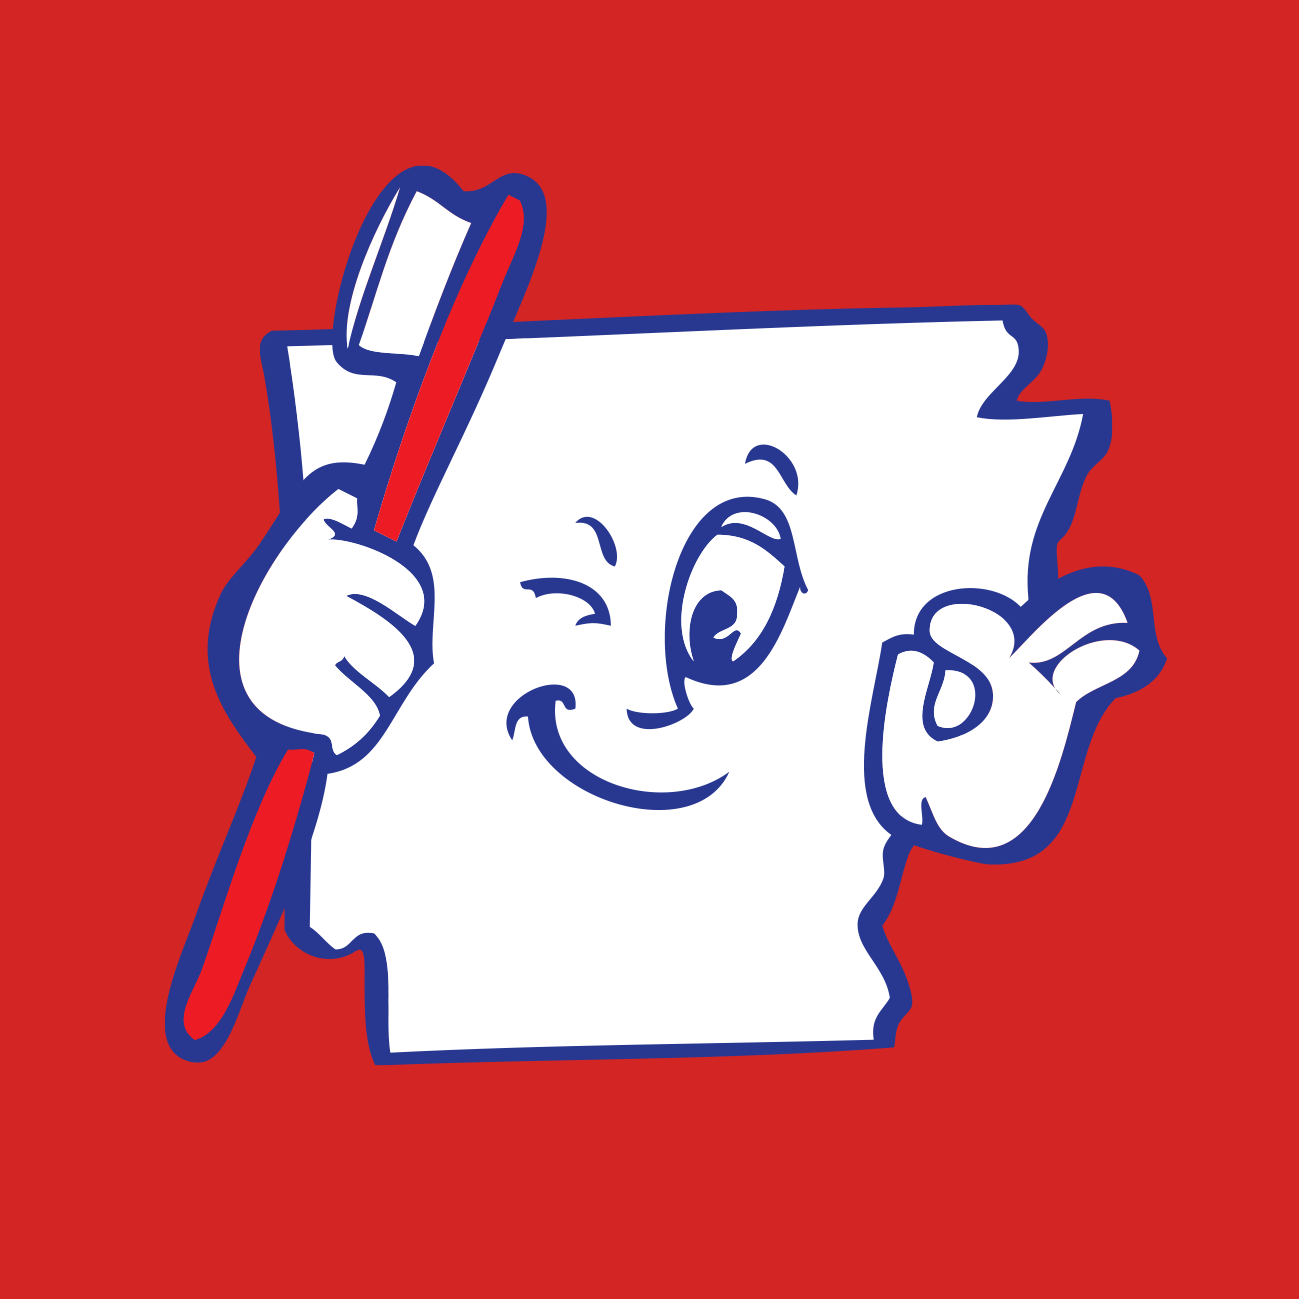 Company logo of Smiles of Arkansas